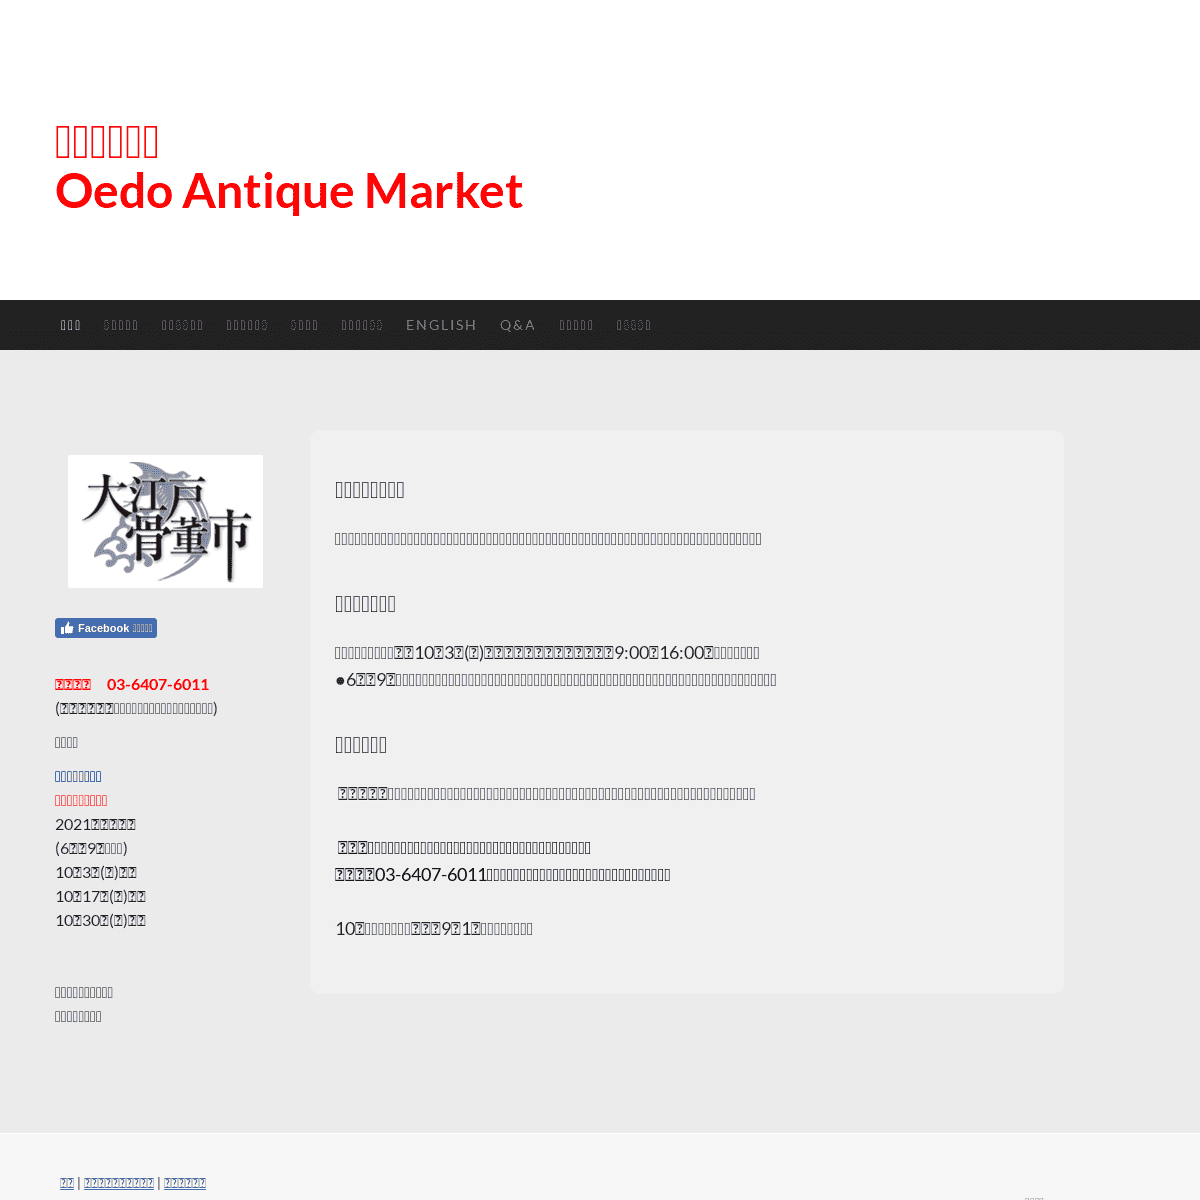 A complete backup of https://antique-market.jp